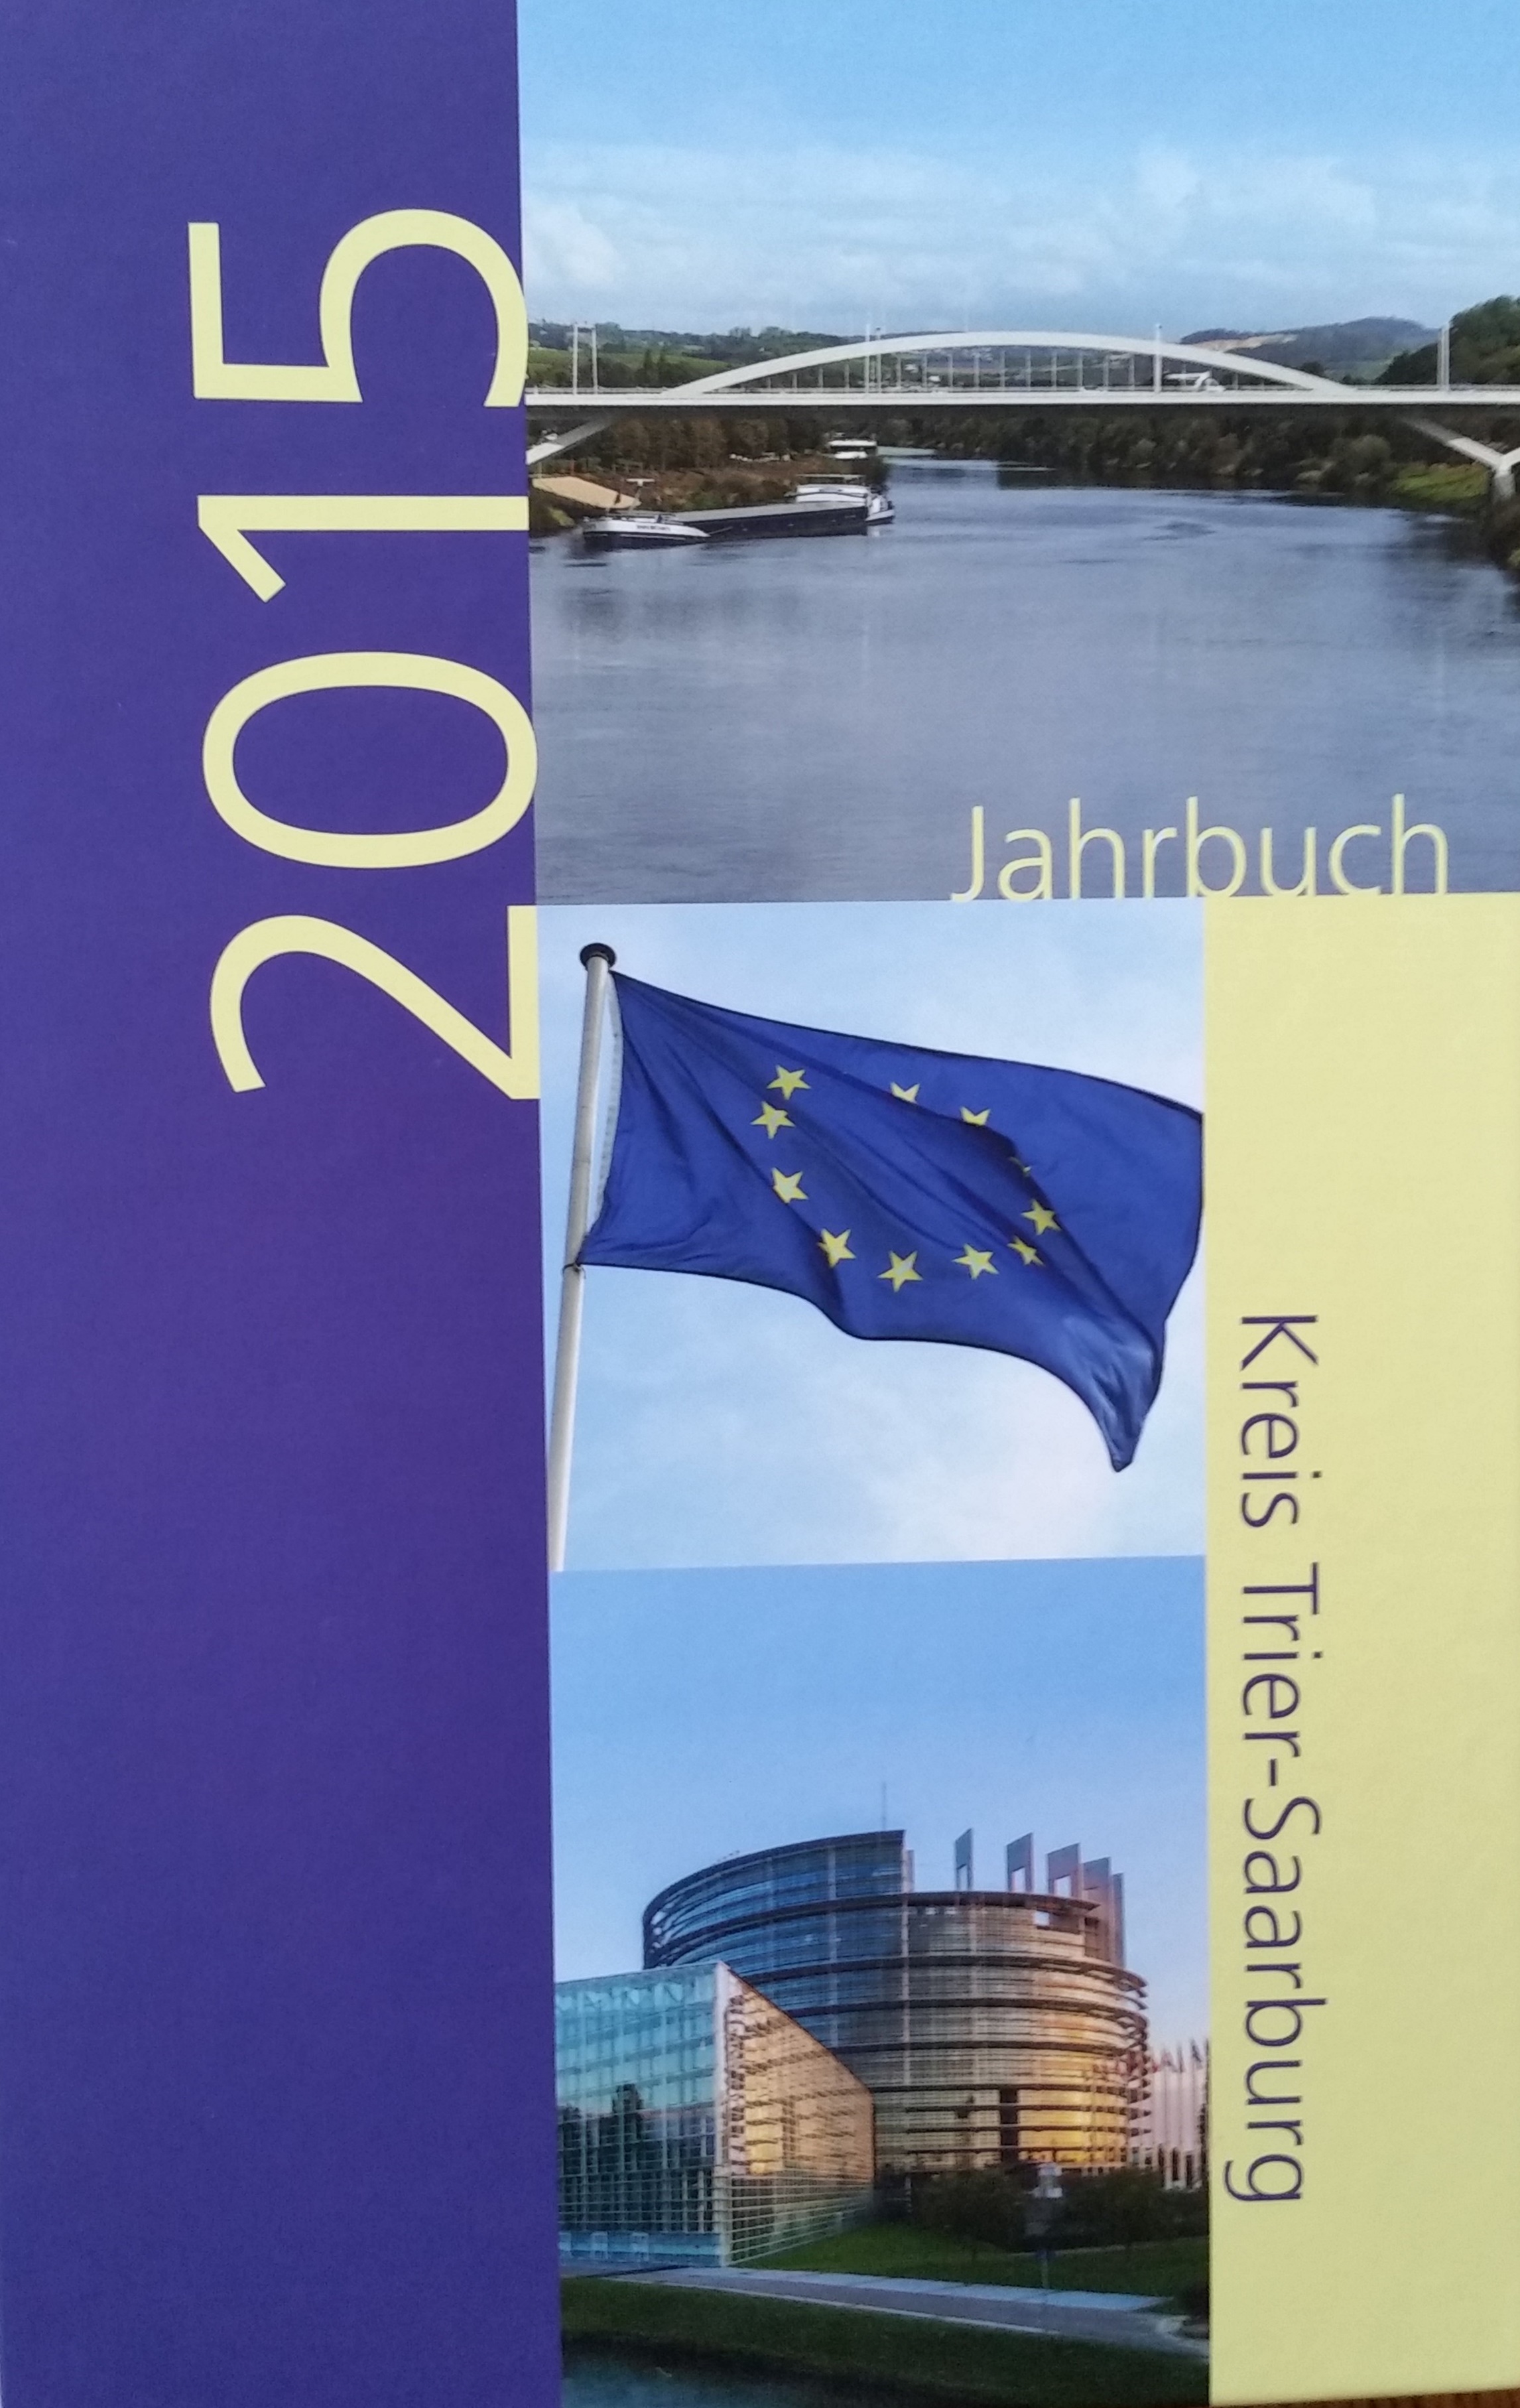 Jahrbuch 2015 Kreis Trier-Saarburg Bucheinband vorne